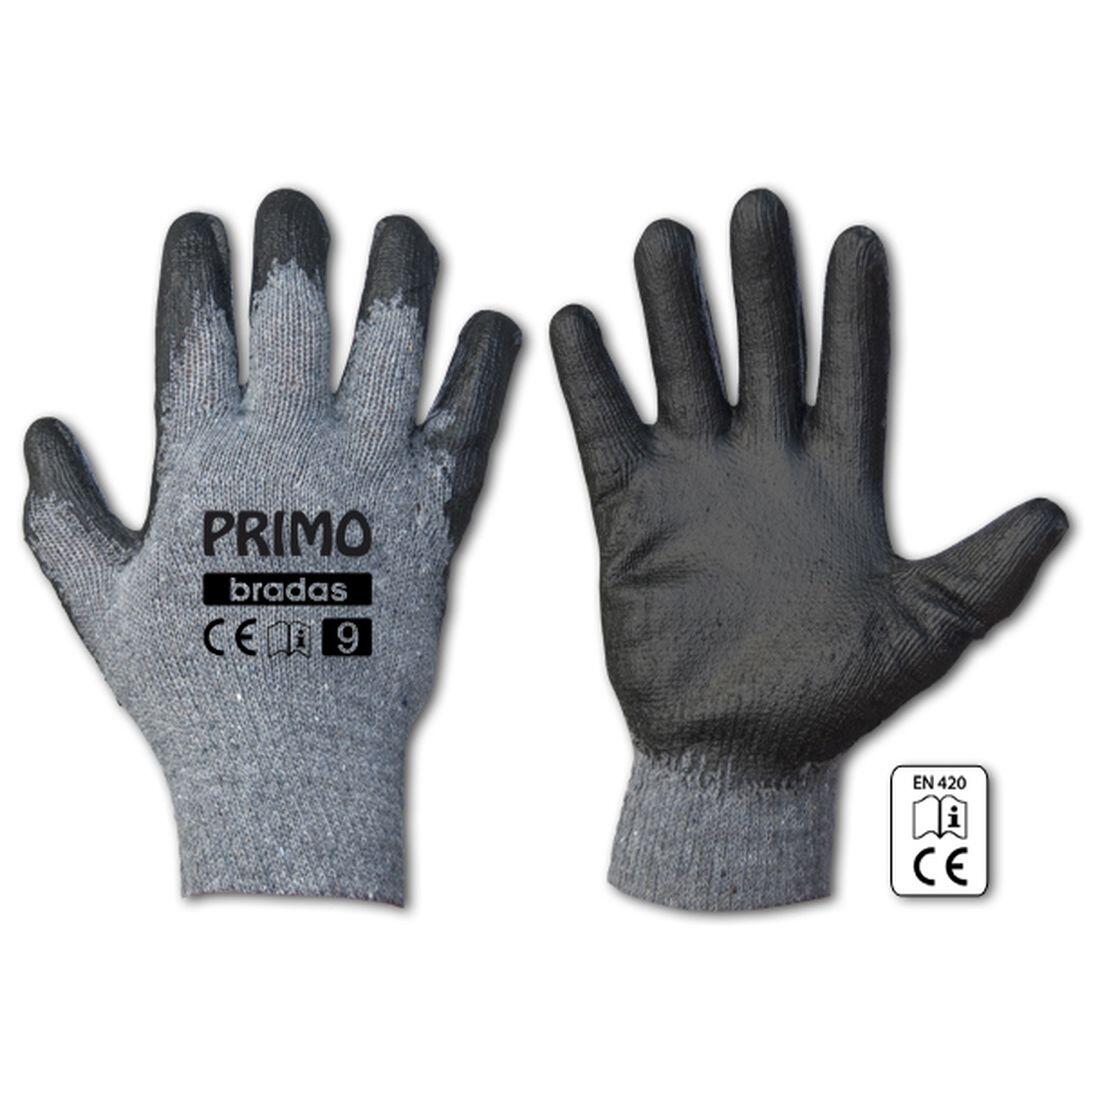 rukavice PRIMO latex 11 0.07 Kg MAXMIX Sklad14 715685 202